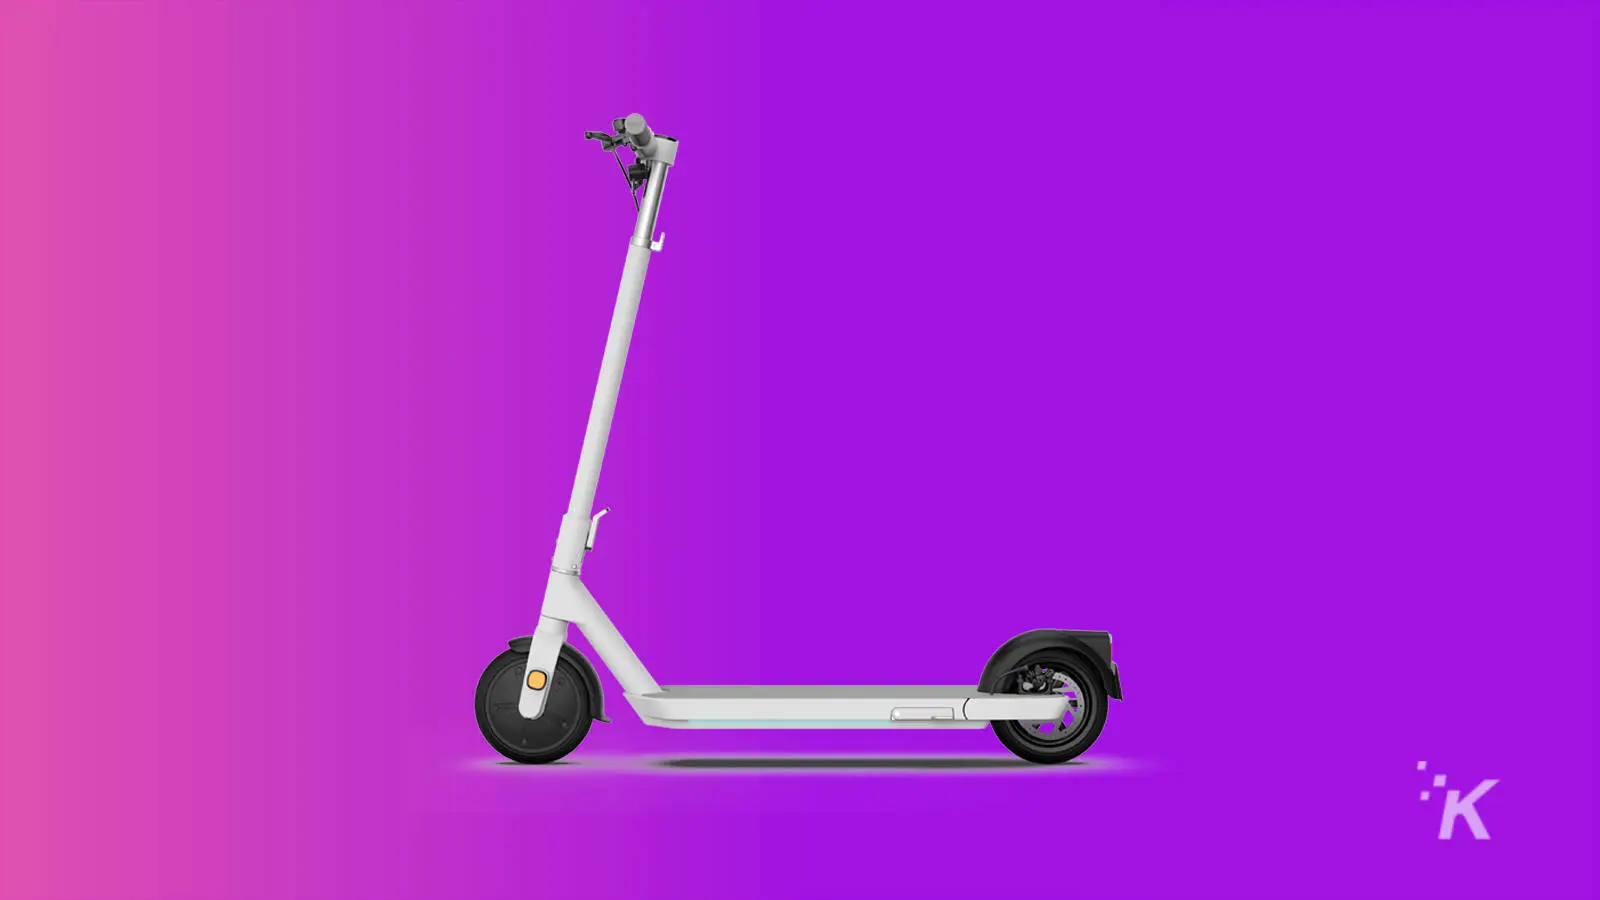 okai neon escooter on purple background